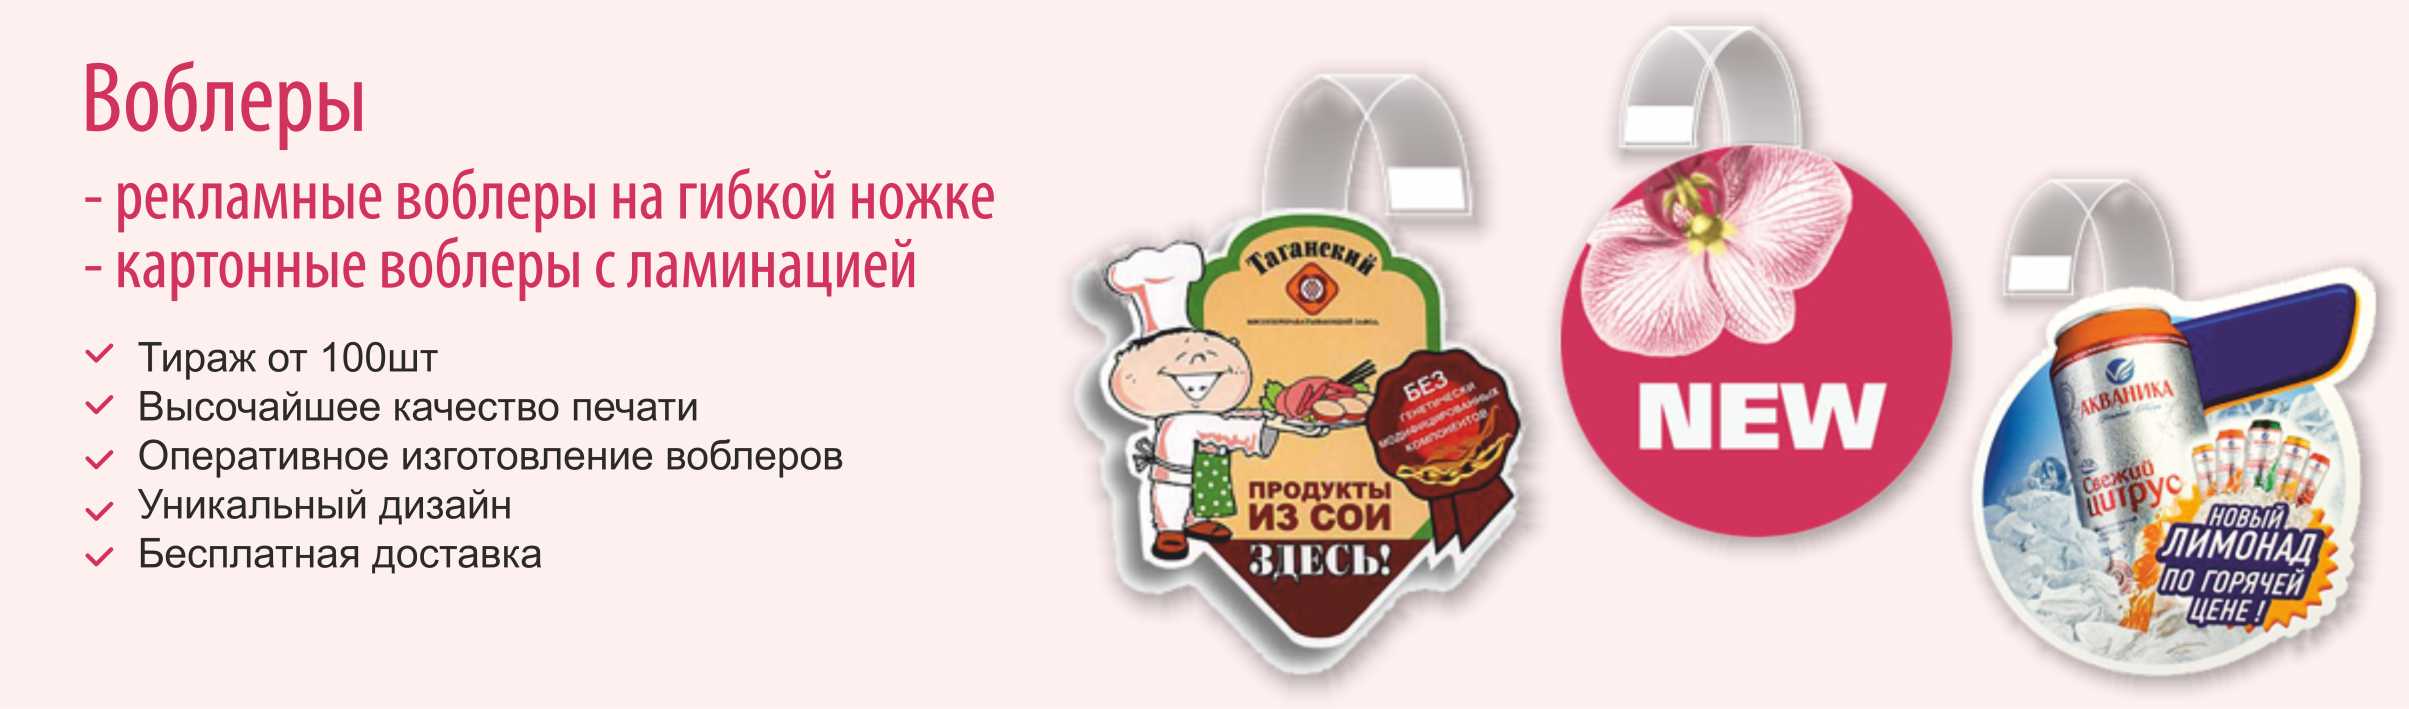 Изготовление воблеров в Минске. Рекламные воблеры